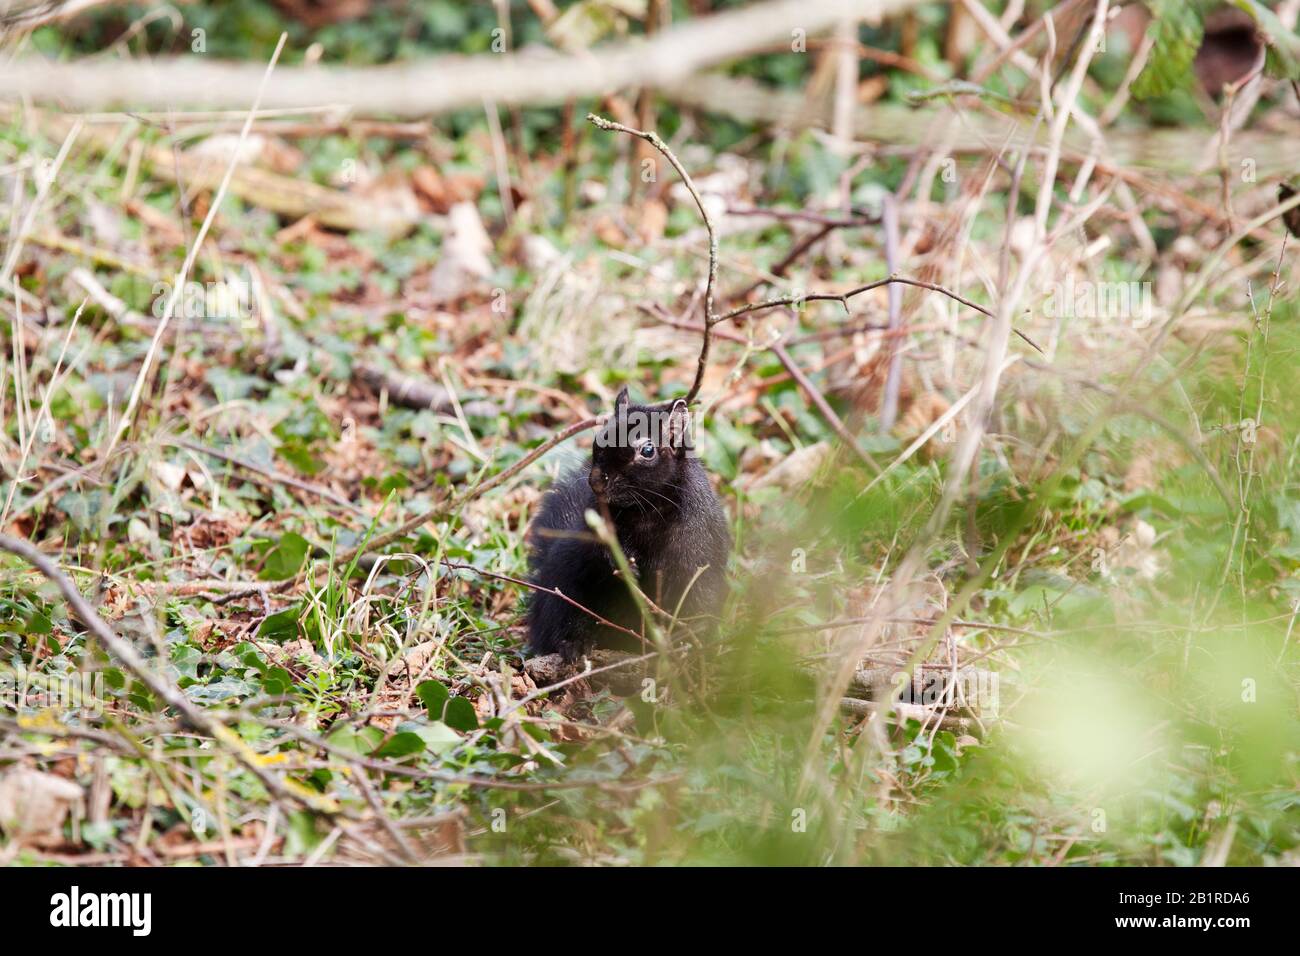 Una tímida ardilla negra parcialmente oculta por el bajo crecimiento, entorno salvaje. Cerca de Letchworth, donde la ardilla negra fue detectada por primera vez en el Reino Unido en 1912. Foto de stock